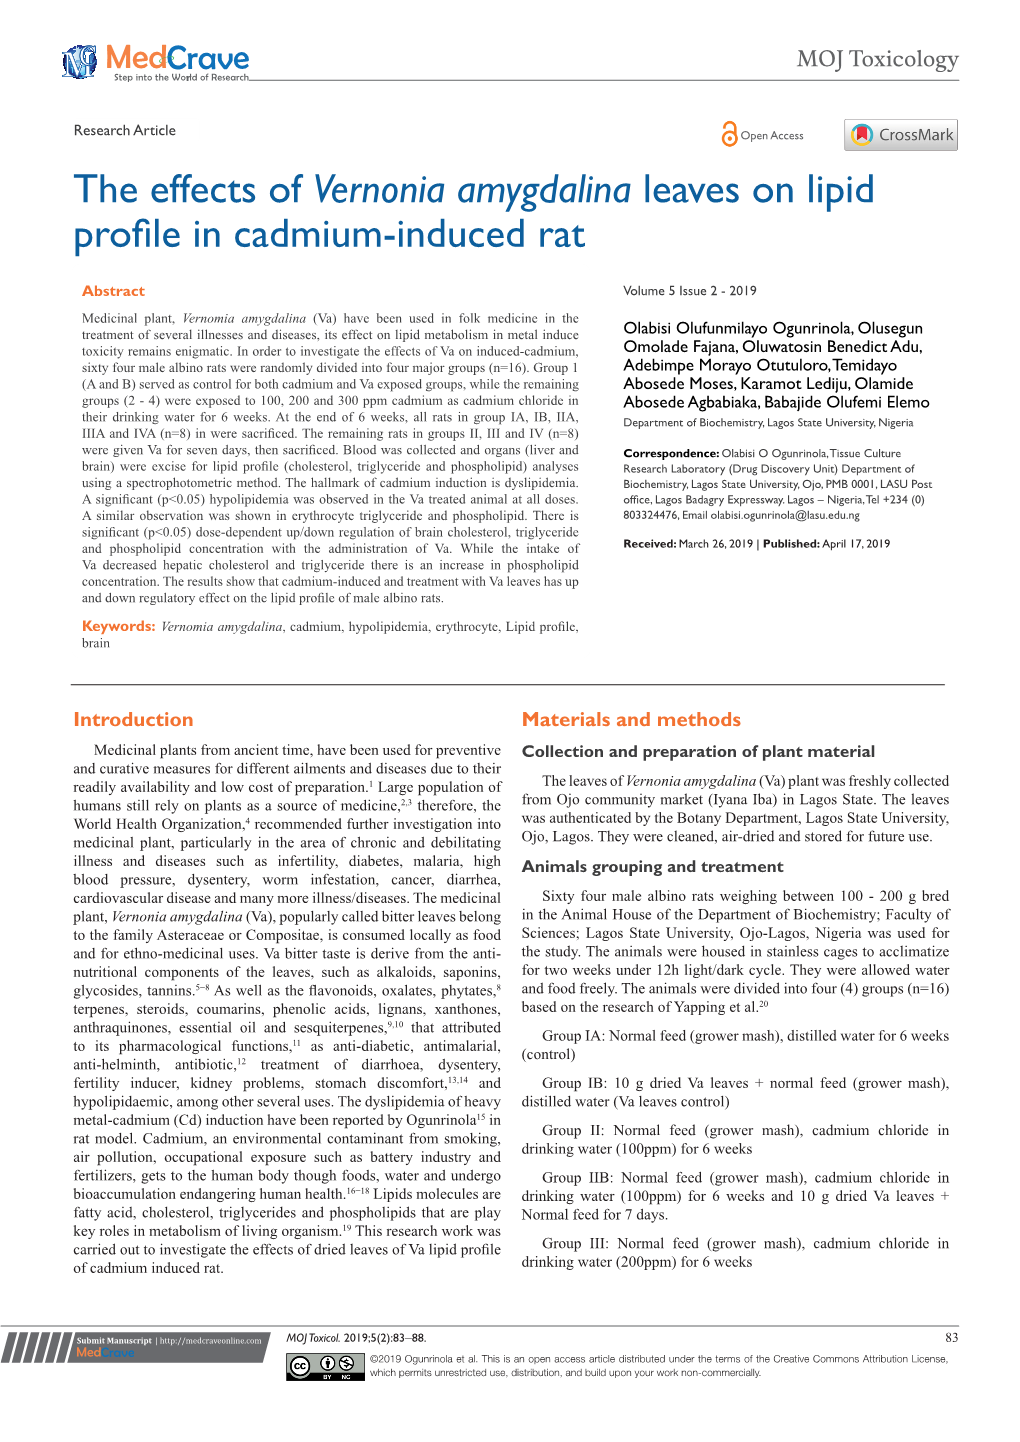 Vernonia Amygdalina Leaves on Lipid Profile in Cadmium-Induced Rat